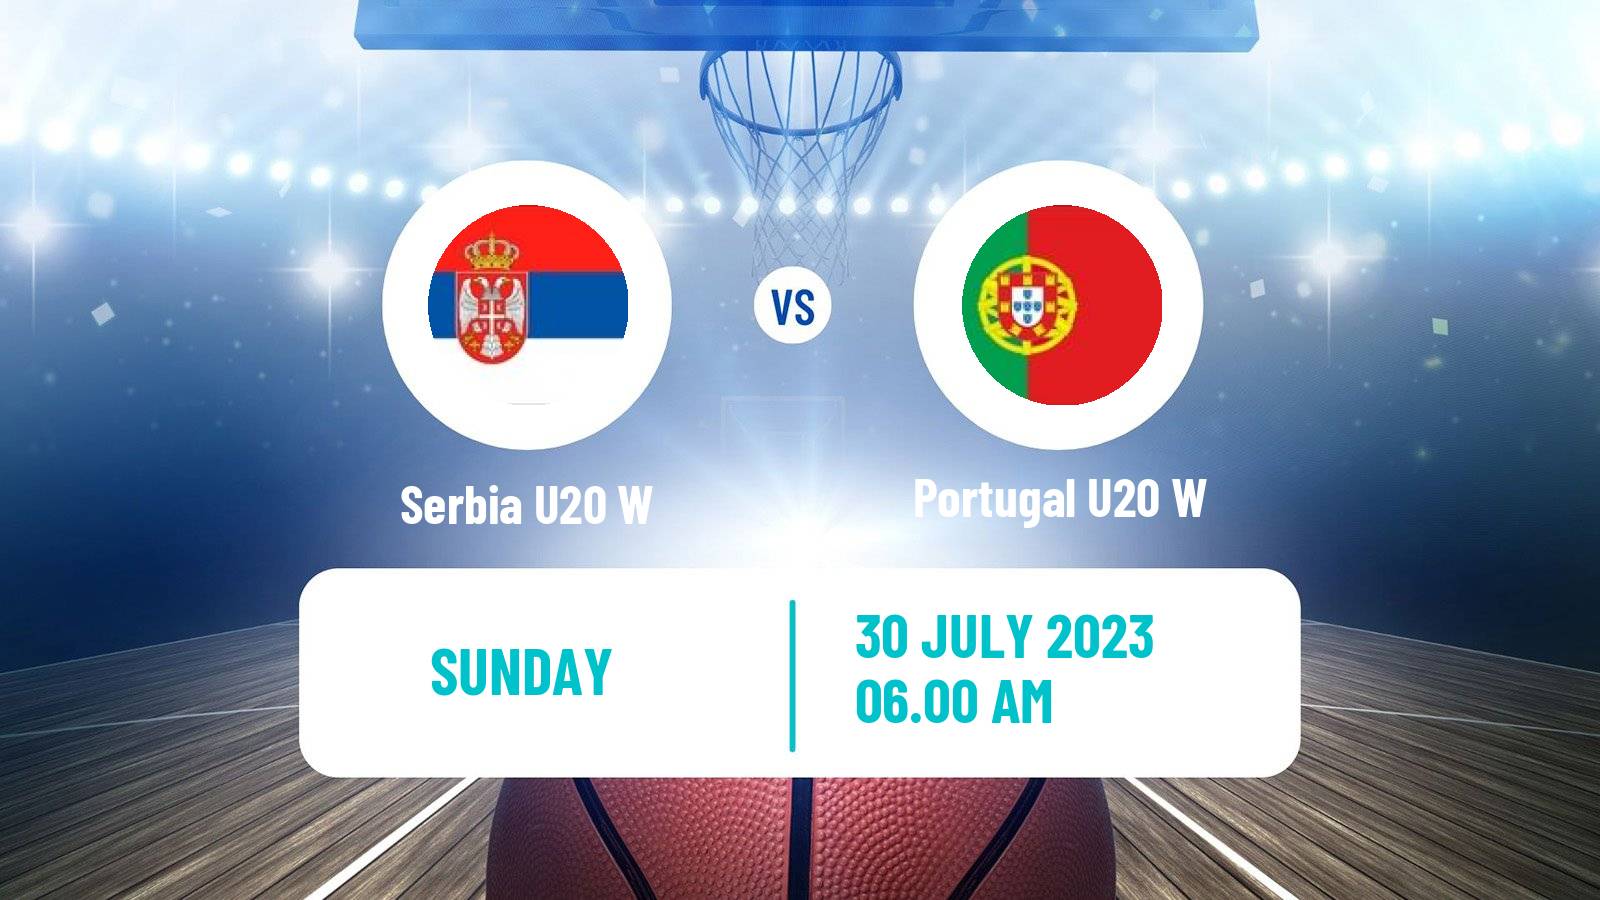 Basketball European Championship U20 Basketball Women Serbia U20 W - Portugal U20 W